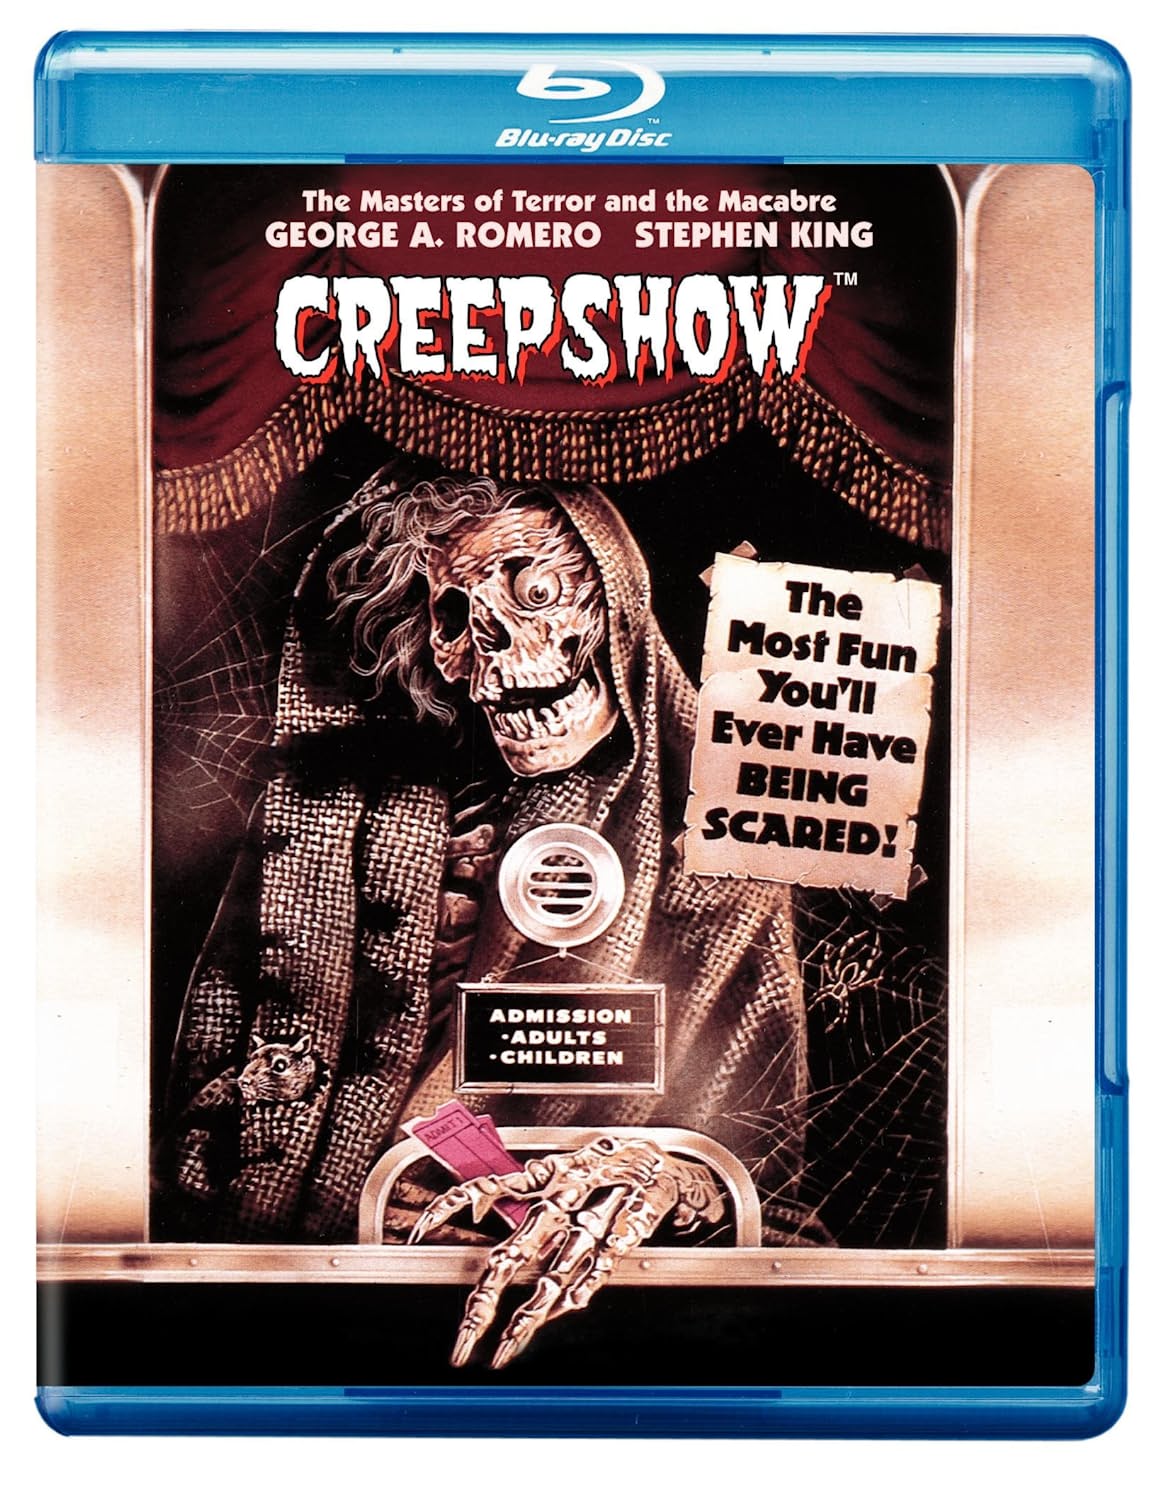 Creepshow - Blu-ray [ 1982 ]  - Horror Movies On Blu-ray - Movies On GRUV